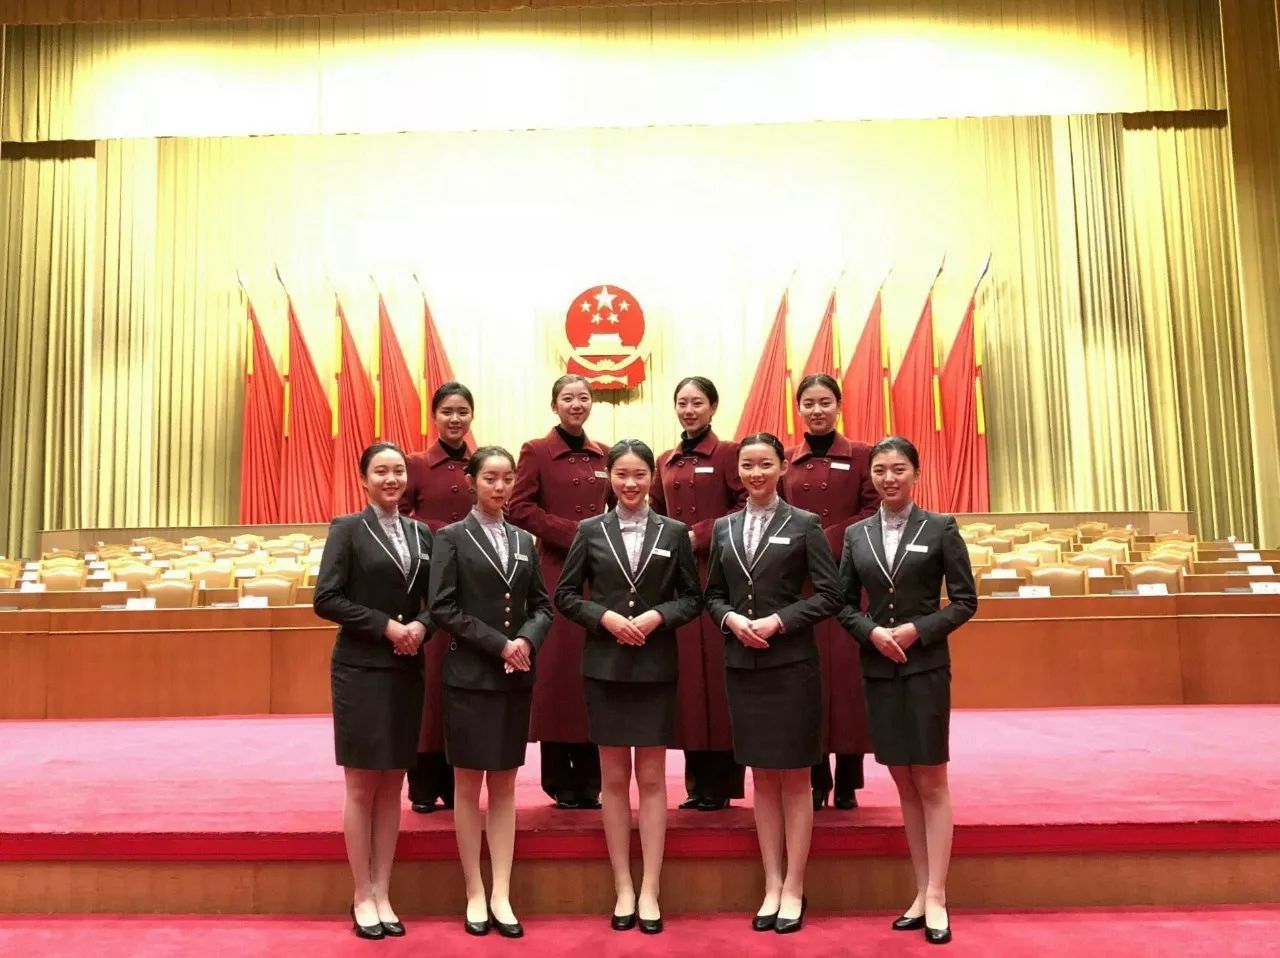 礼仪工坊成员出色完成杭州市第十三届人民代表大会第二次会议礼宾服务工作